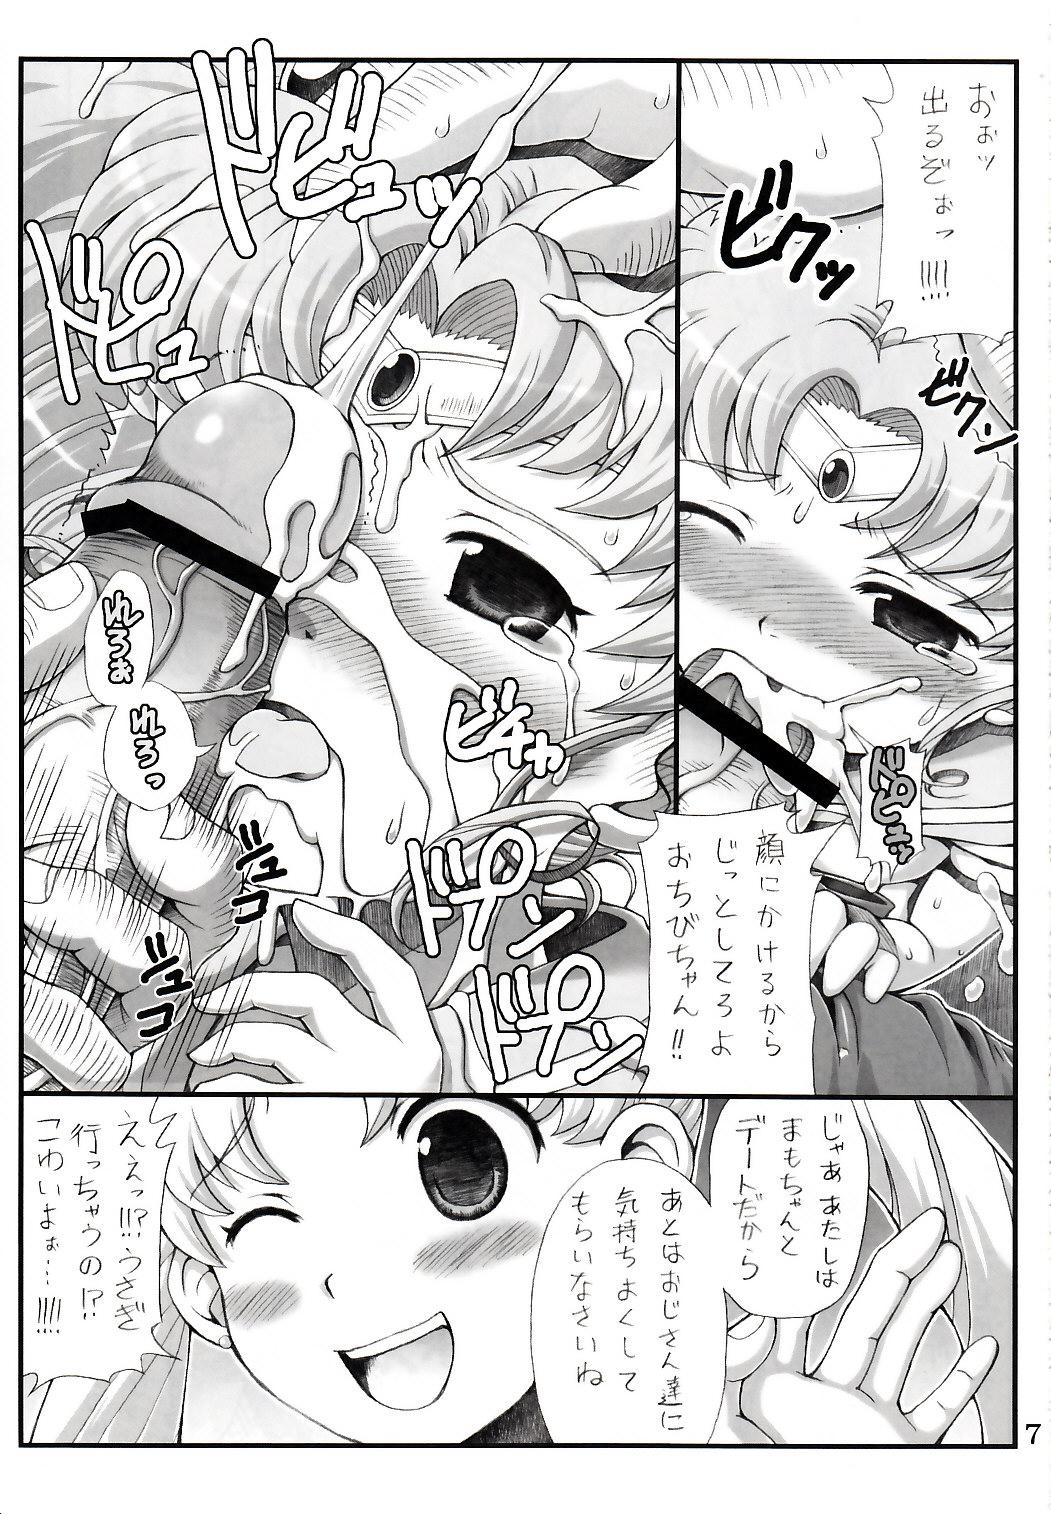 Camsex Lovely Battle Suit HALF & HALF - Sailor moon Sakura taisen Blowjob - Page 7